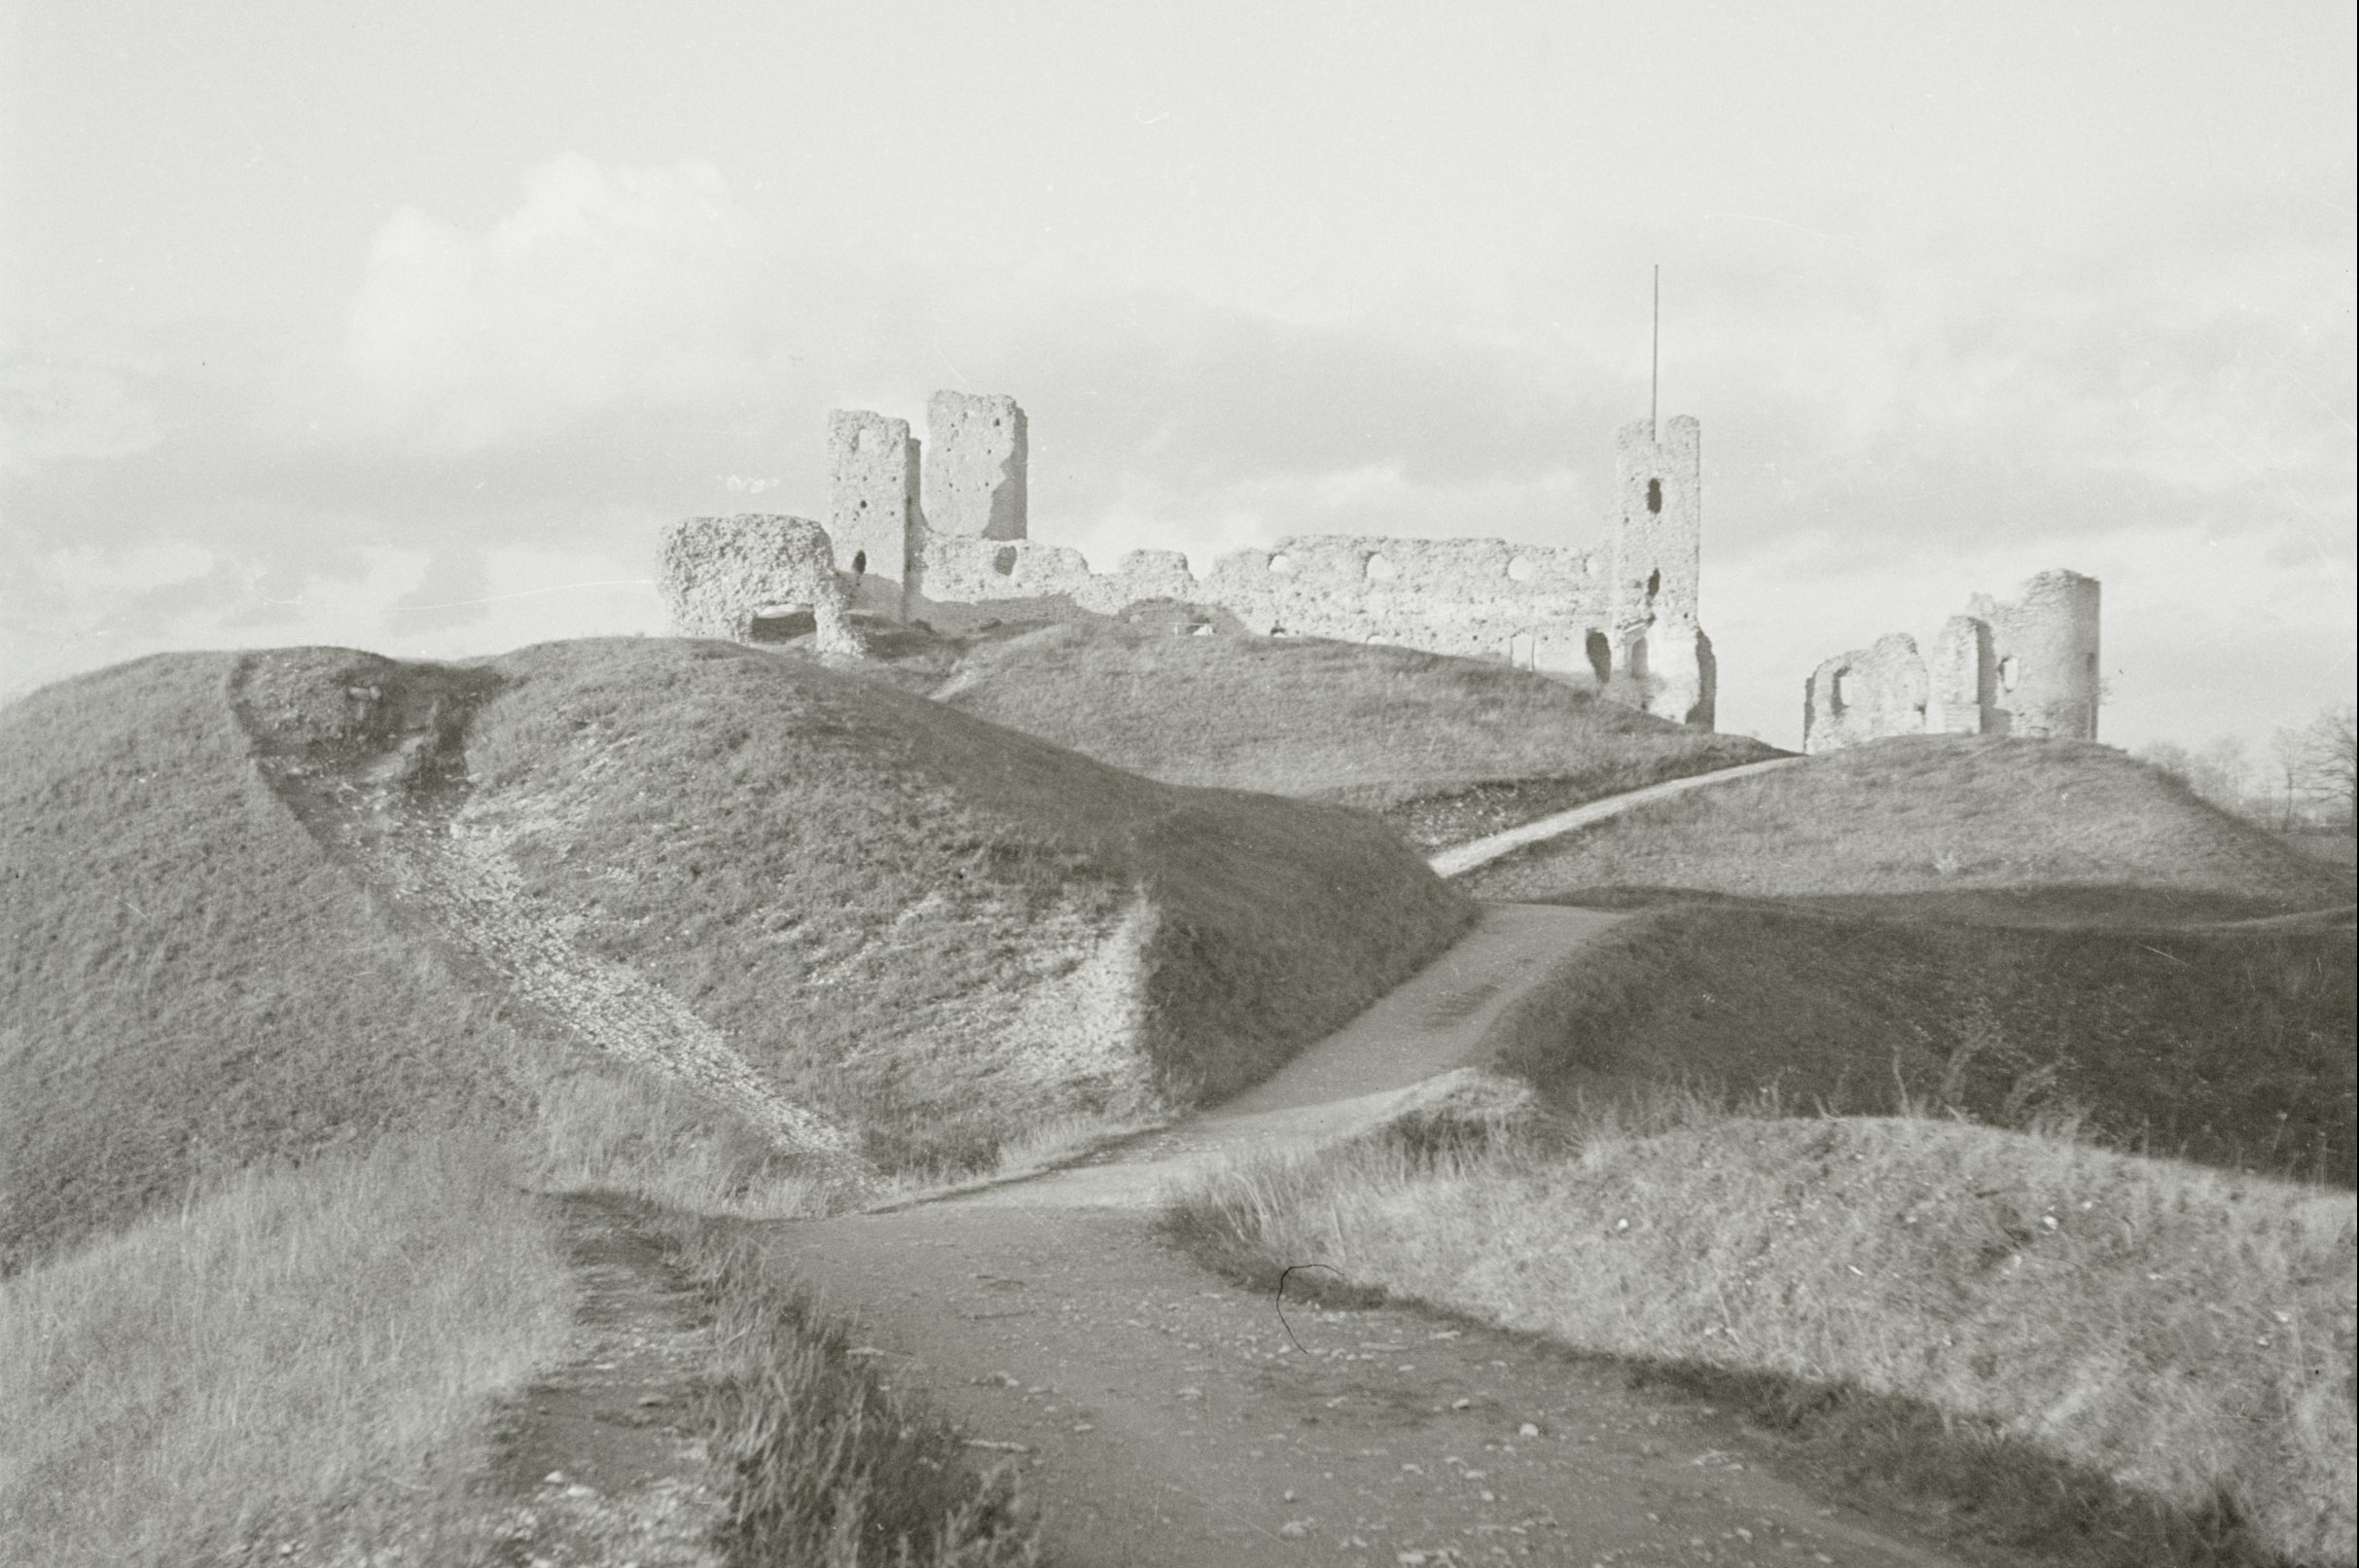 Ürituse Rakvere linnuse ehitusloost ja arheoloogilistest välitöödest – retk Rakvere linnuses pilt